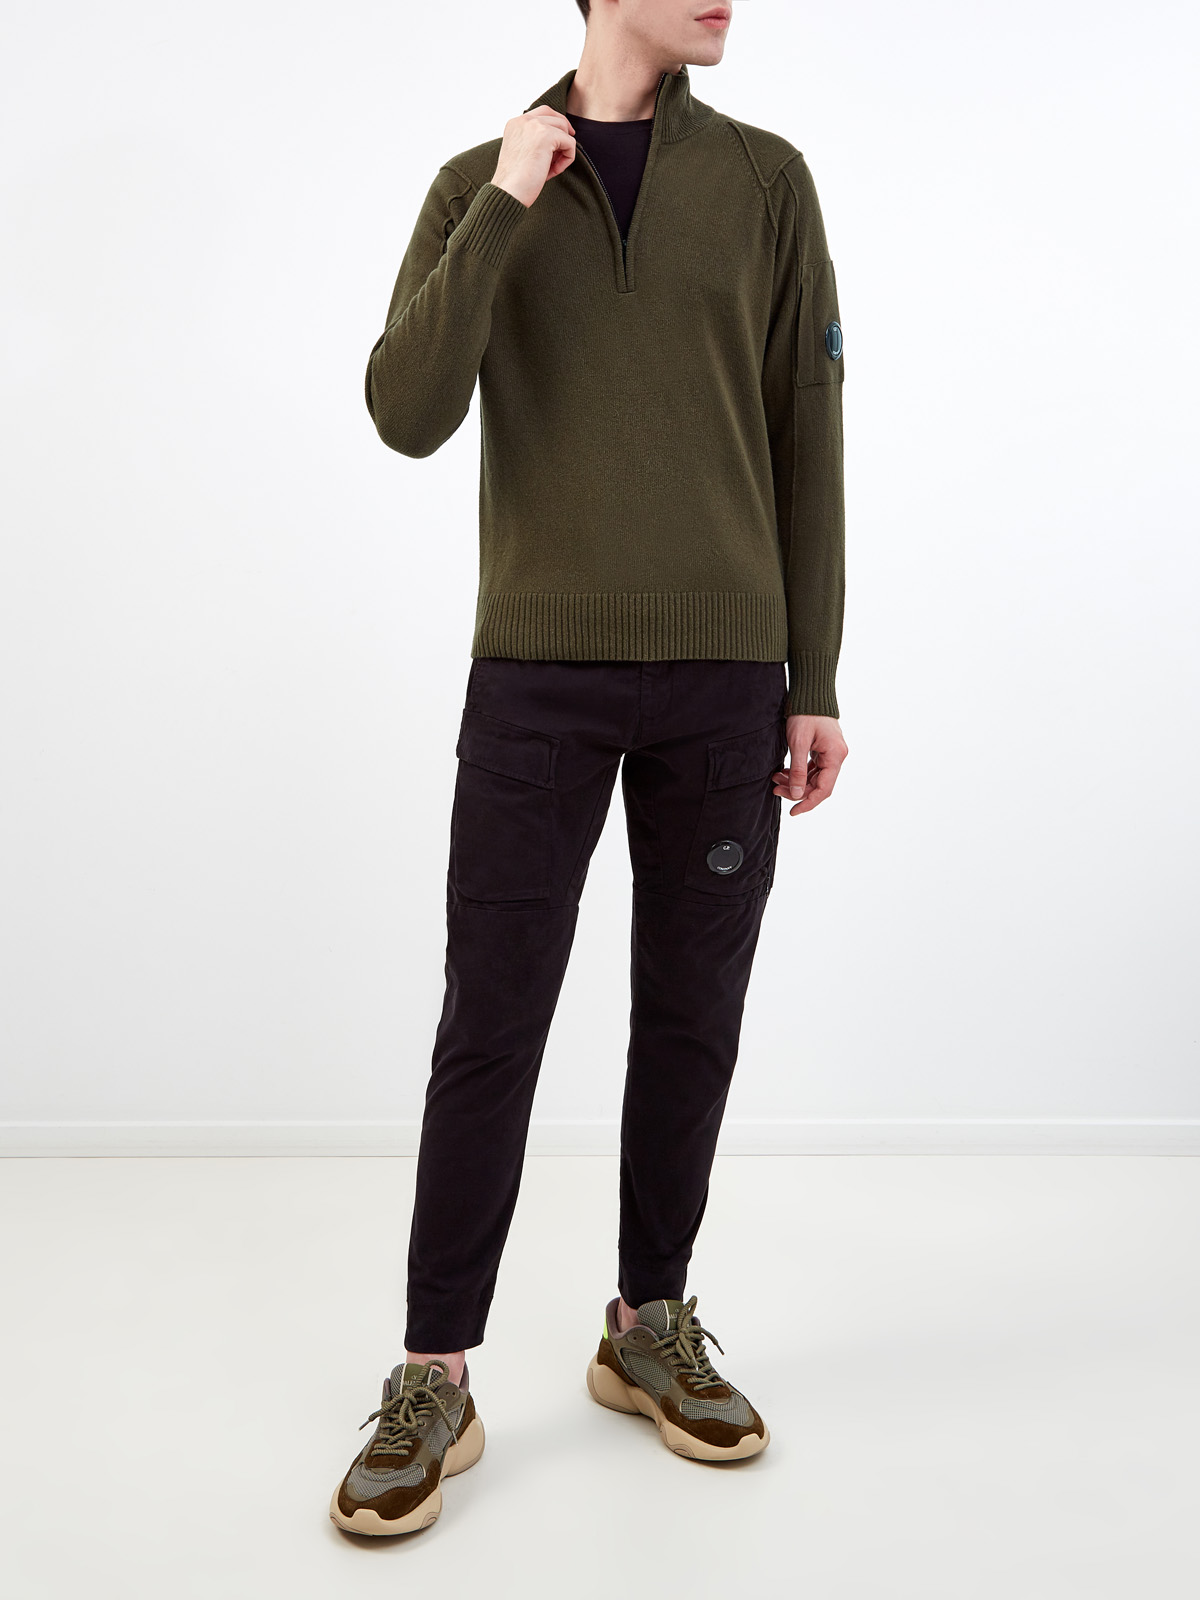 Шерстяной свитер с фактурными швами и застежкой на молнию C.P.COMPANY, цвет зеленый, размер L;XL;2XL;M - фото 2